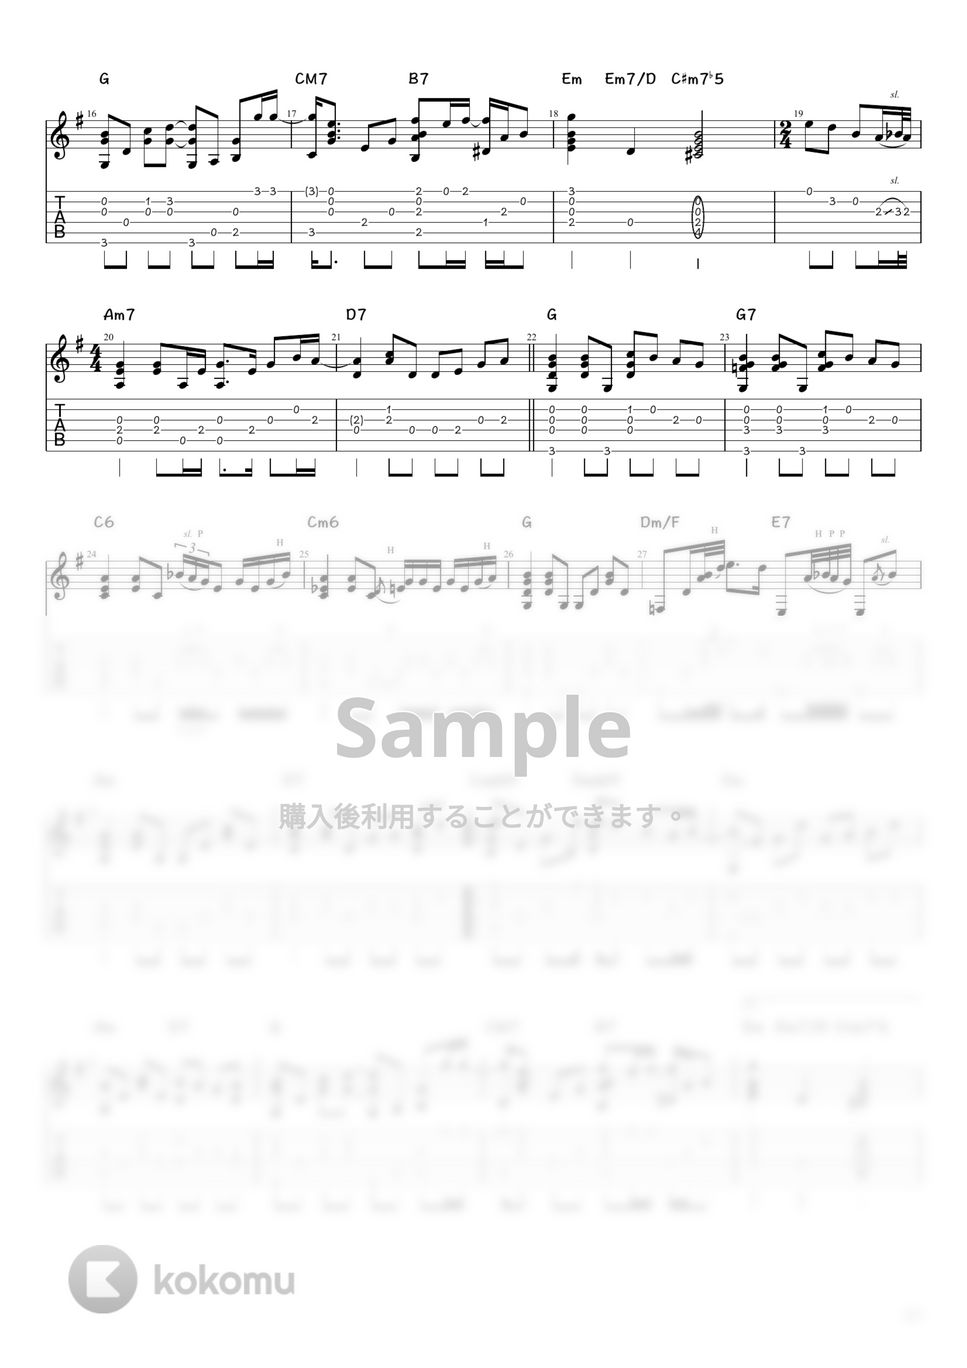 玉置浩二 - メロディー (ソロギター / タブ譜) by 井上さとみ